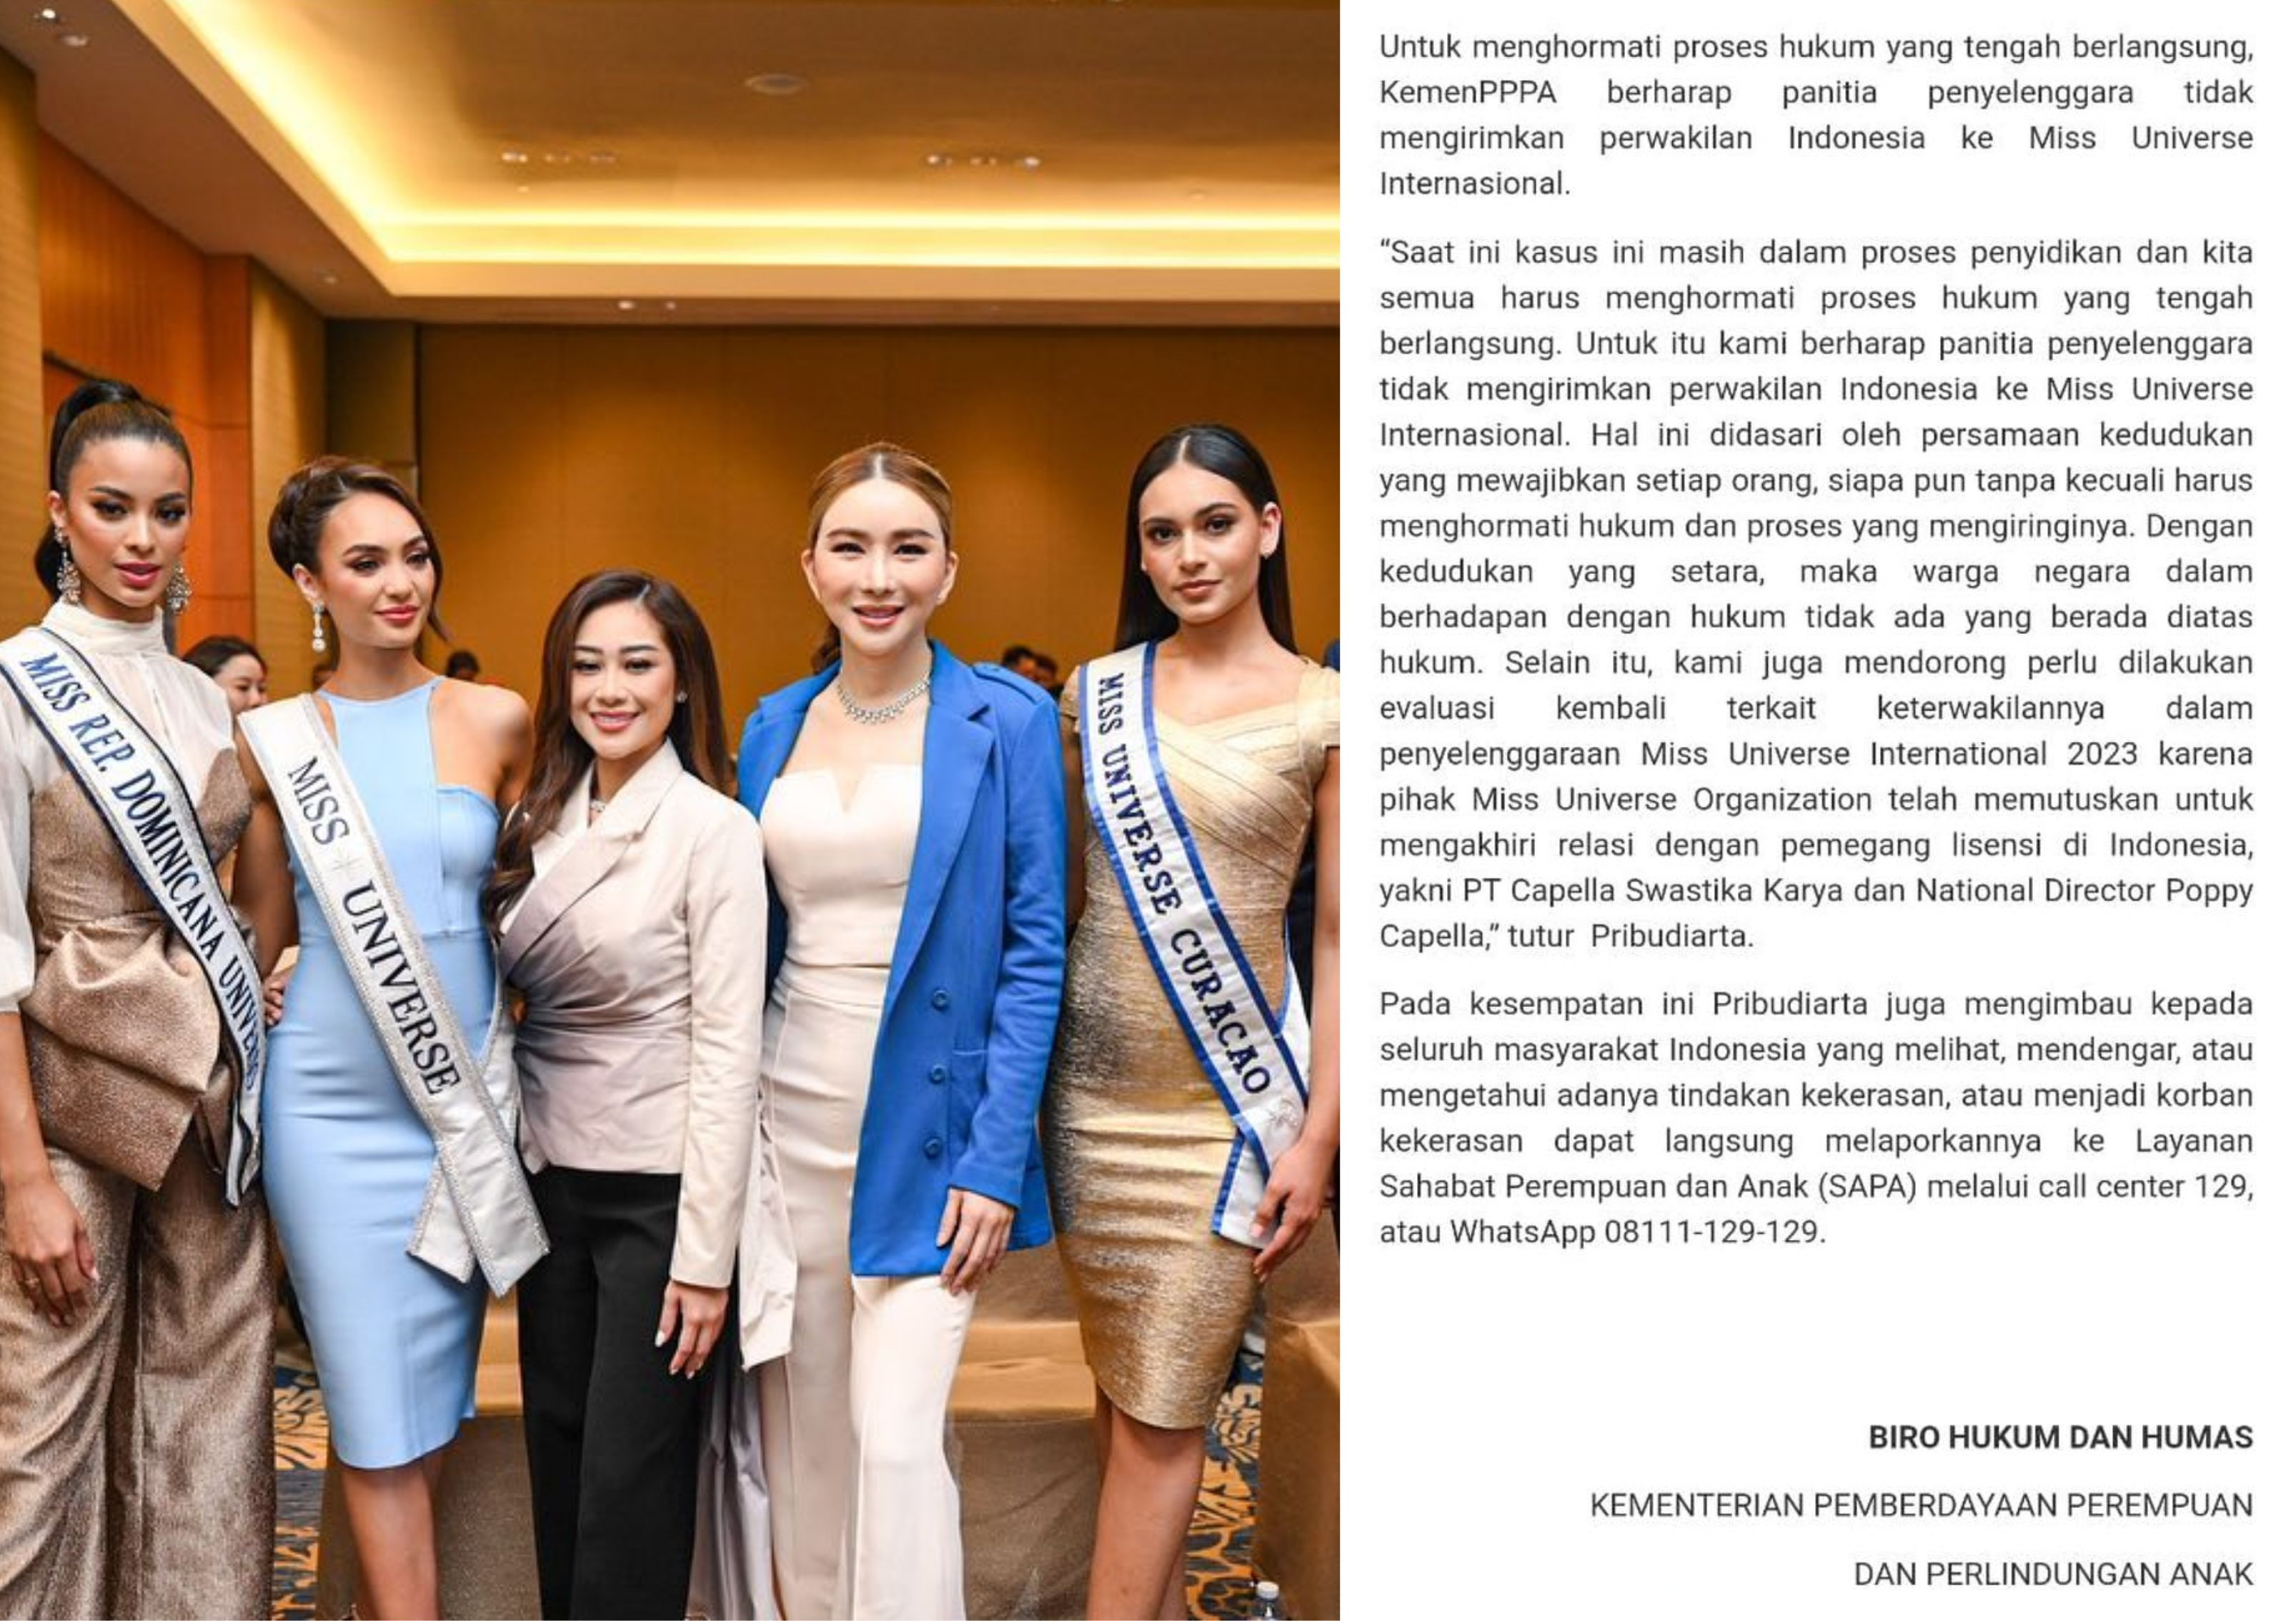 Giải trí - Indonesia yêu cầu không cử thí sinh thi Miss Universe 2023